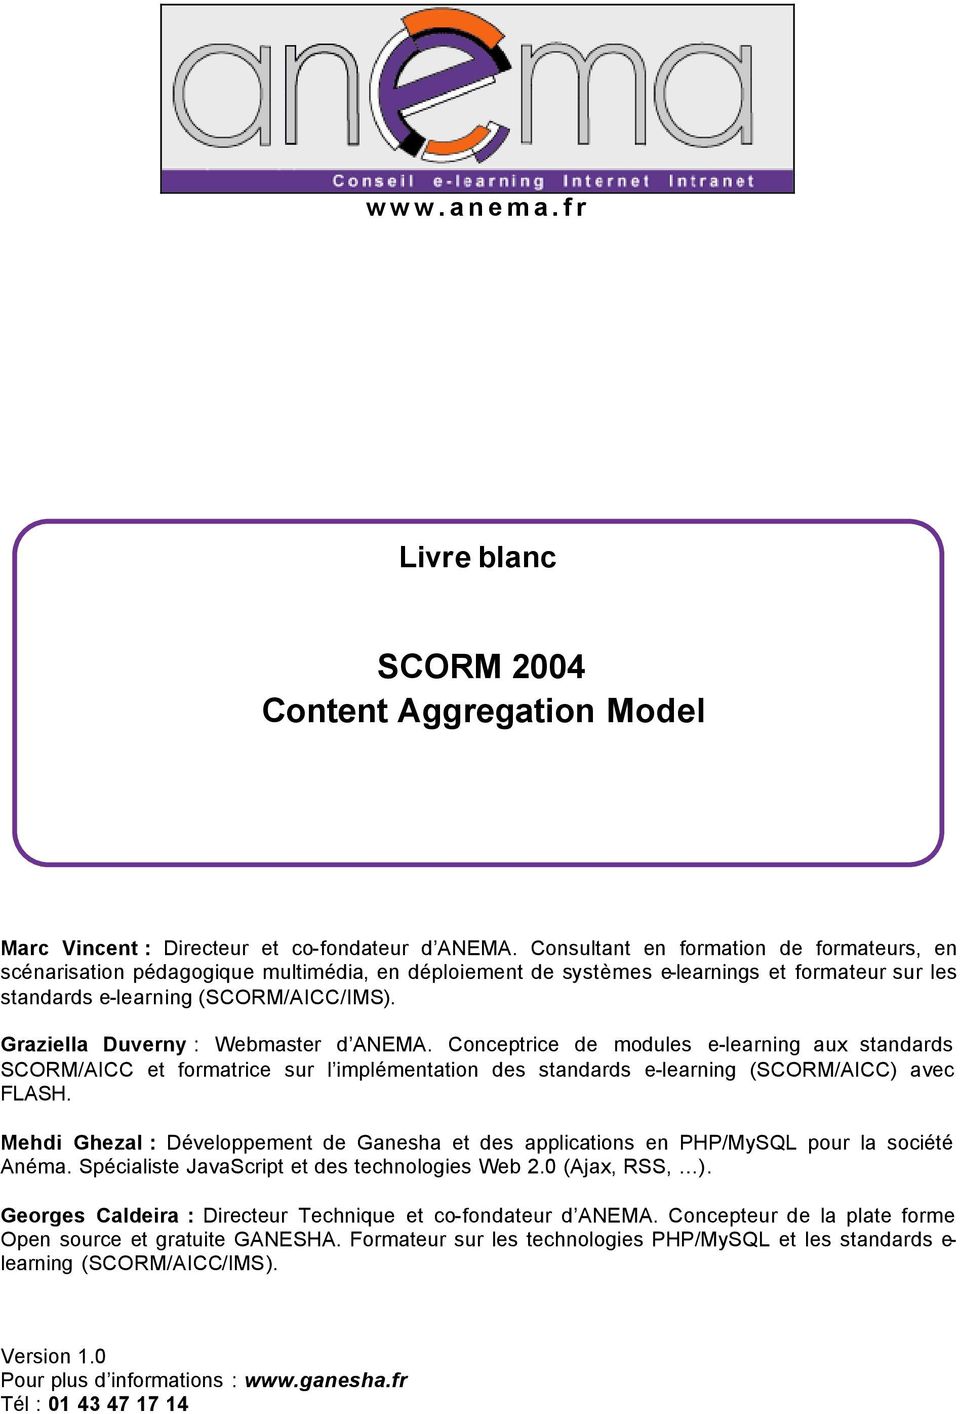 Graziella Duverny : Webmaster d ANEMA. Conceptrice de modules e-learning aux standards SCORM/AICC et formatrice sur l implémentation des standards e-learning (SCORM/AICC) avec FLASH.